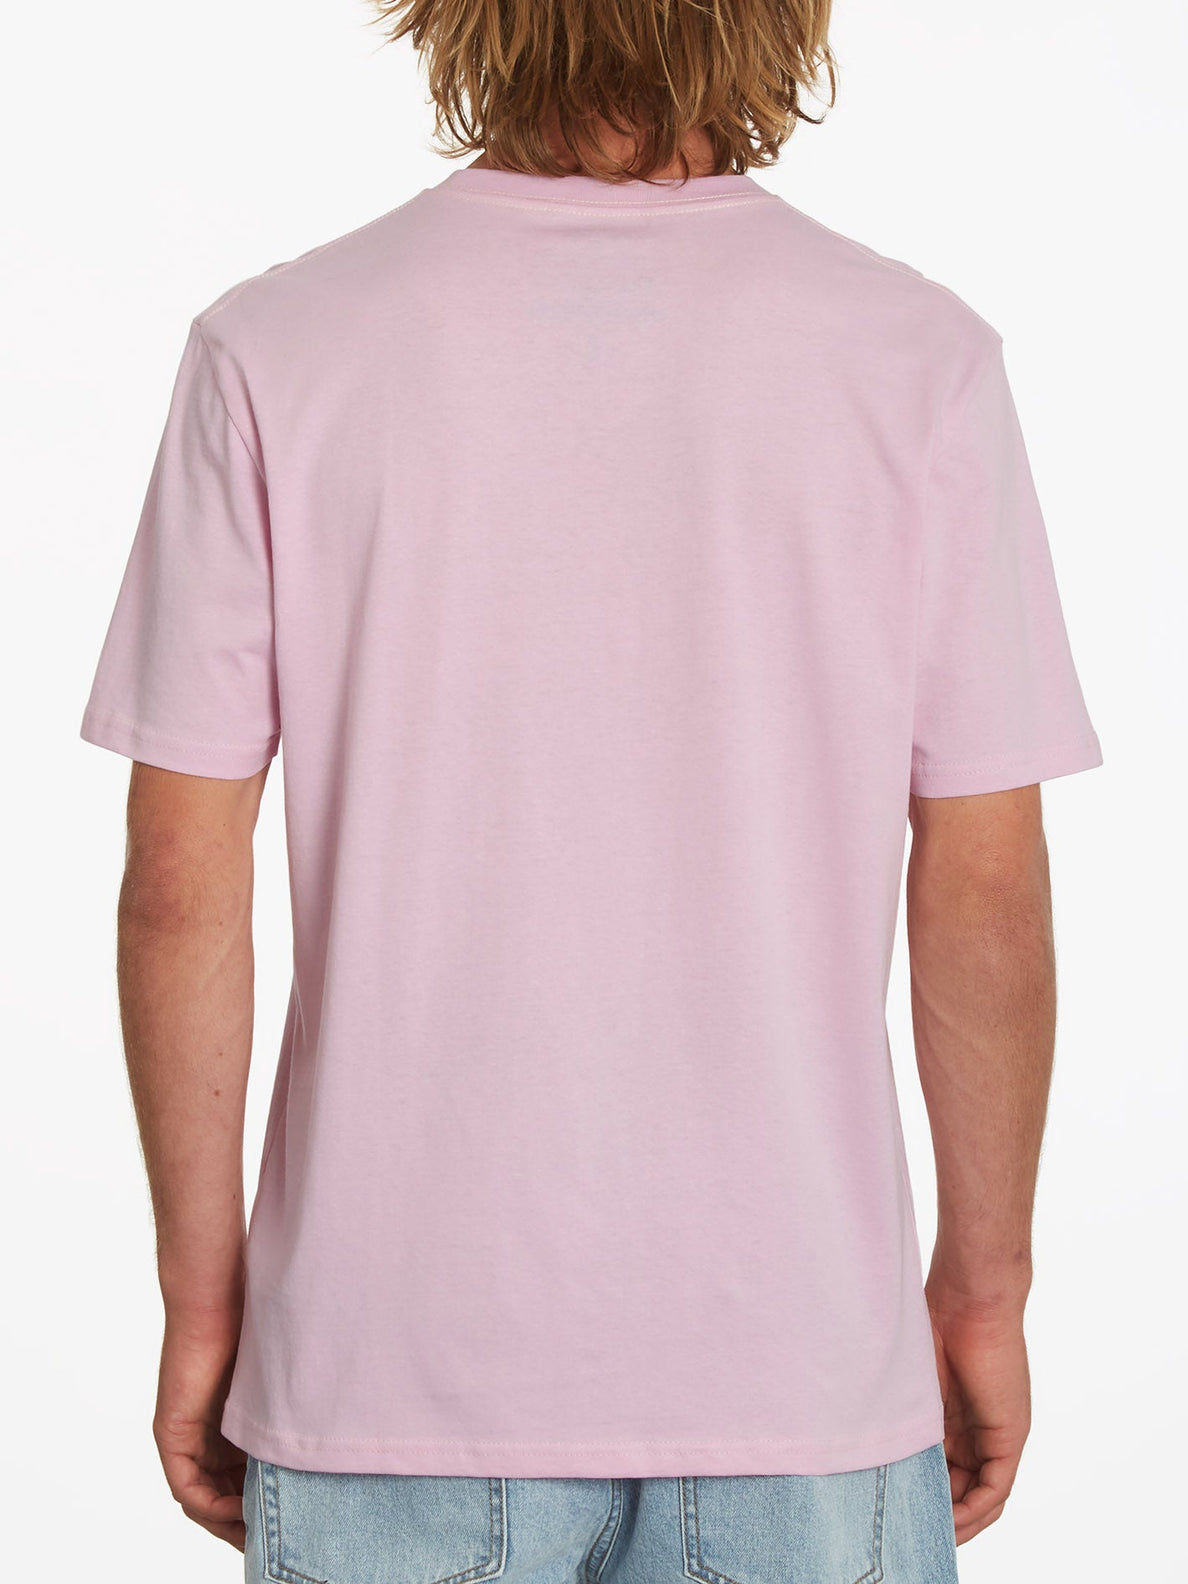 Darn T-shirt - PARADISE PINK (A3532209_PDP) [B]